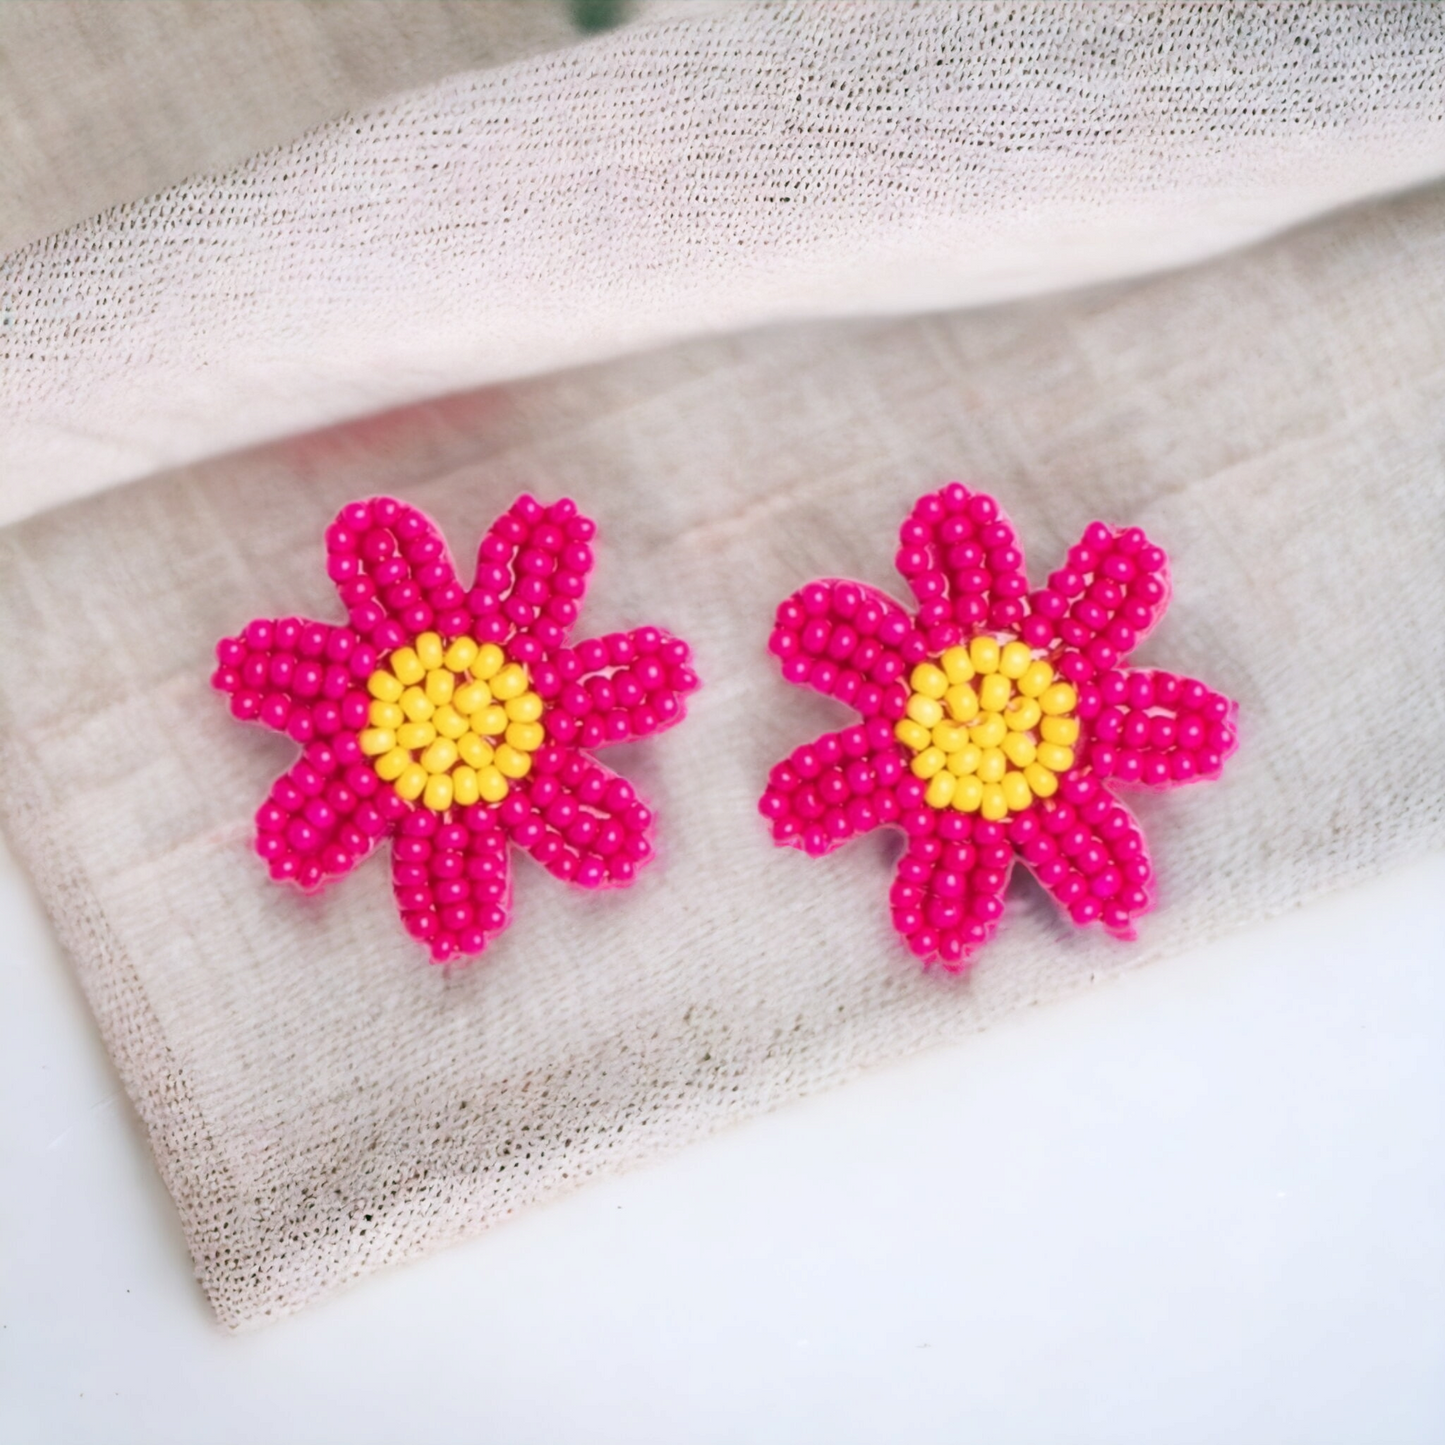 Sensational Seeds - Pink Seed Bead Earrings - rainbowartsreview by Danielle Baker